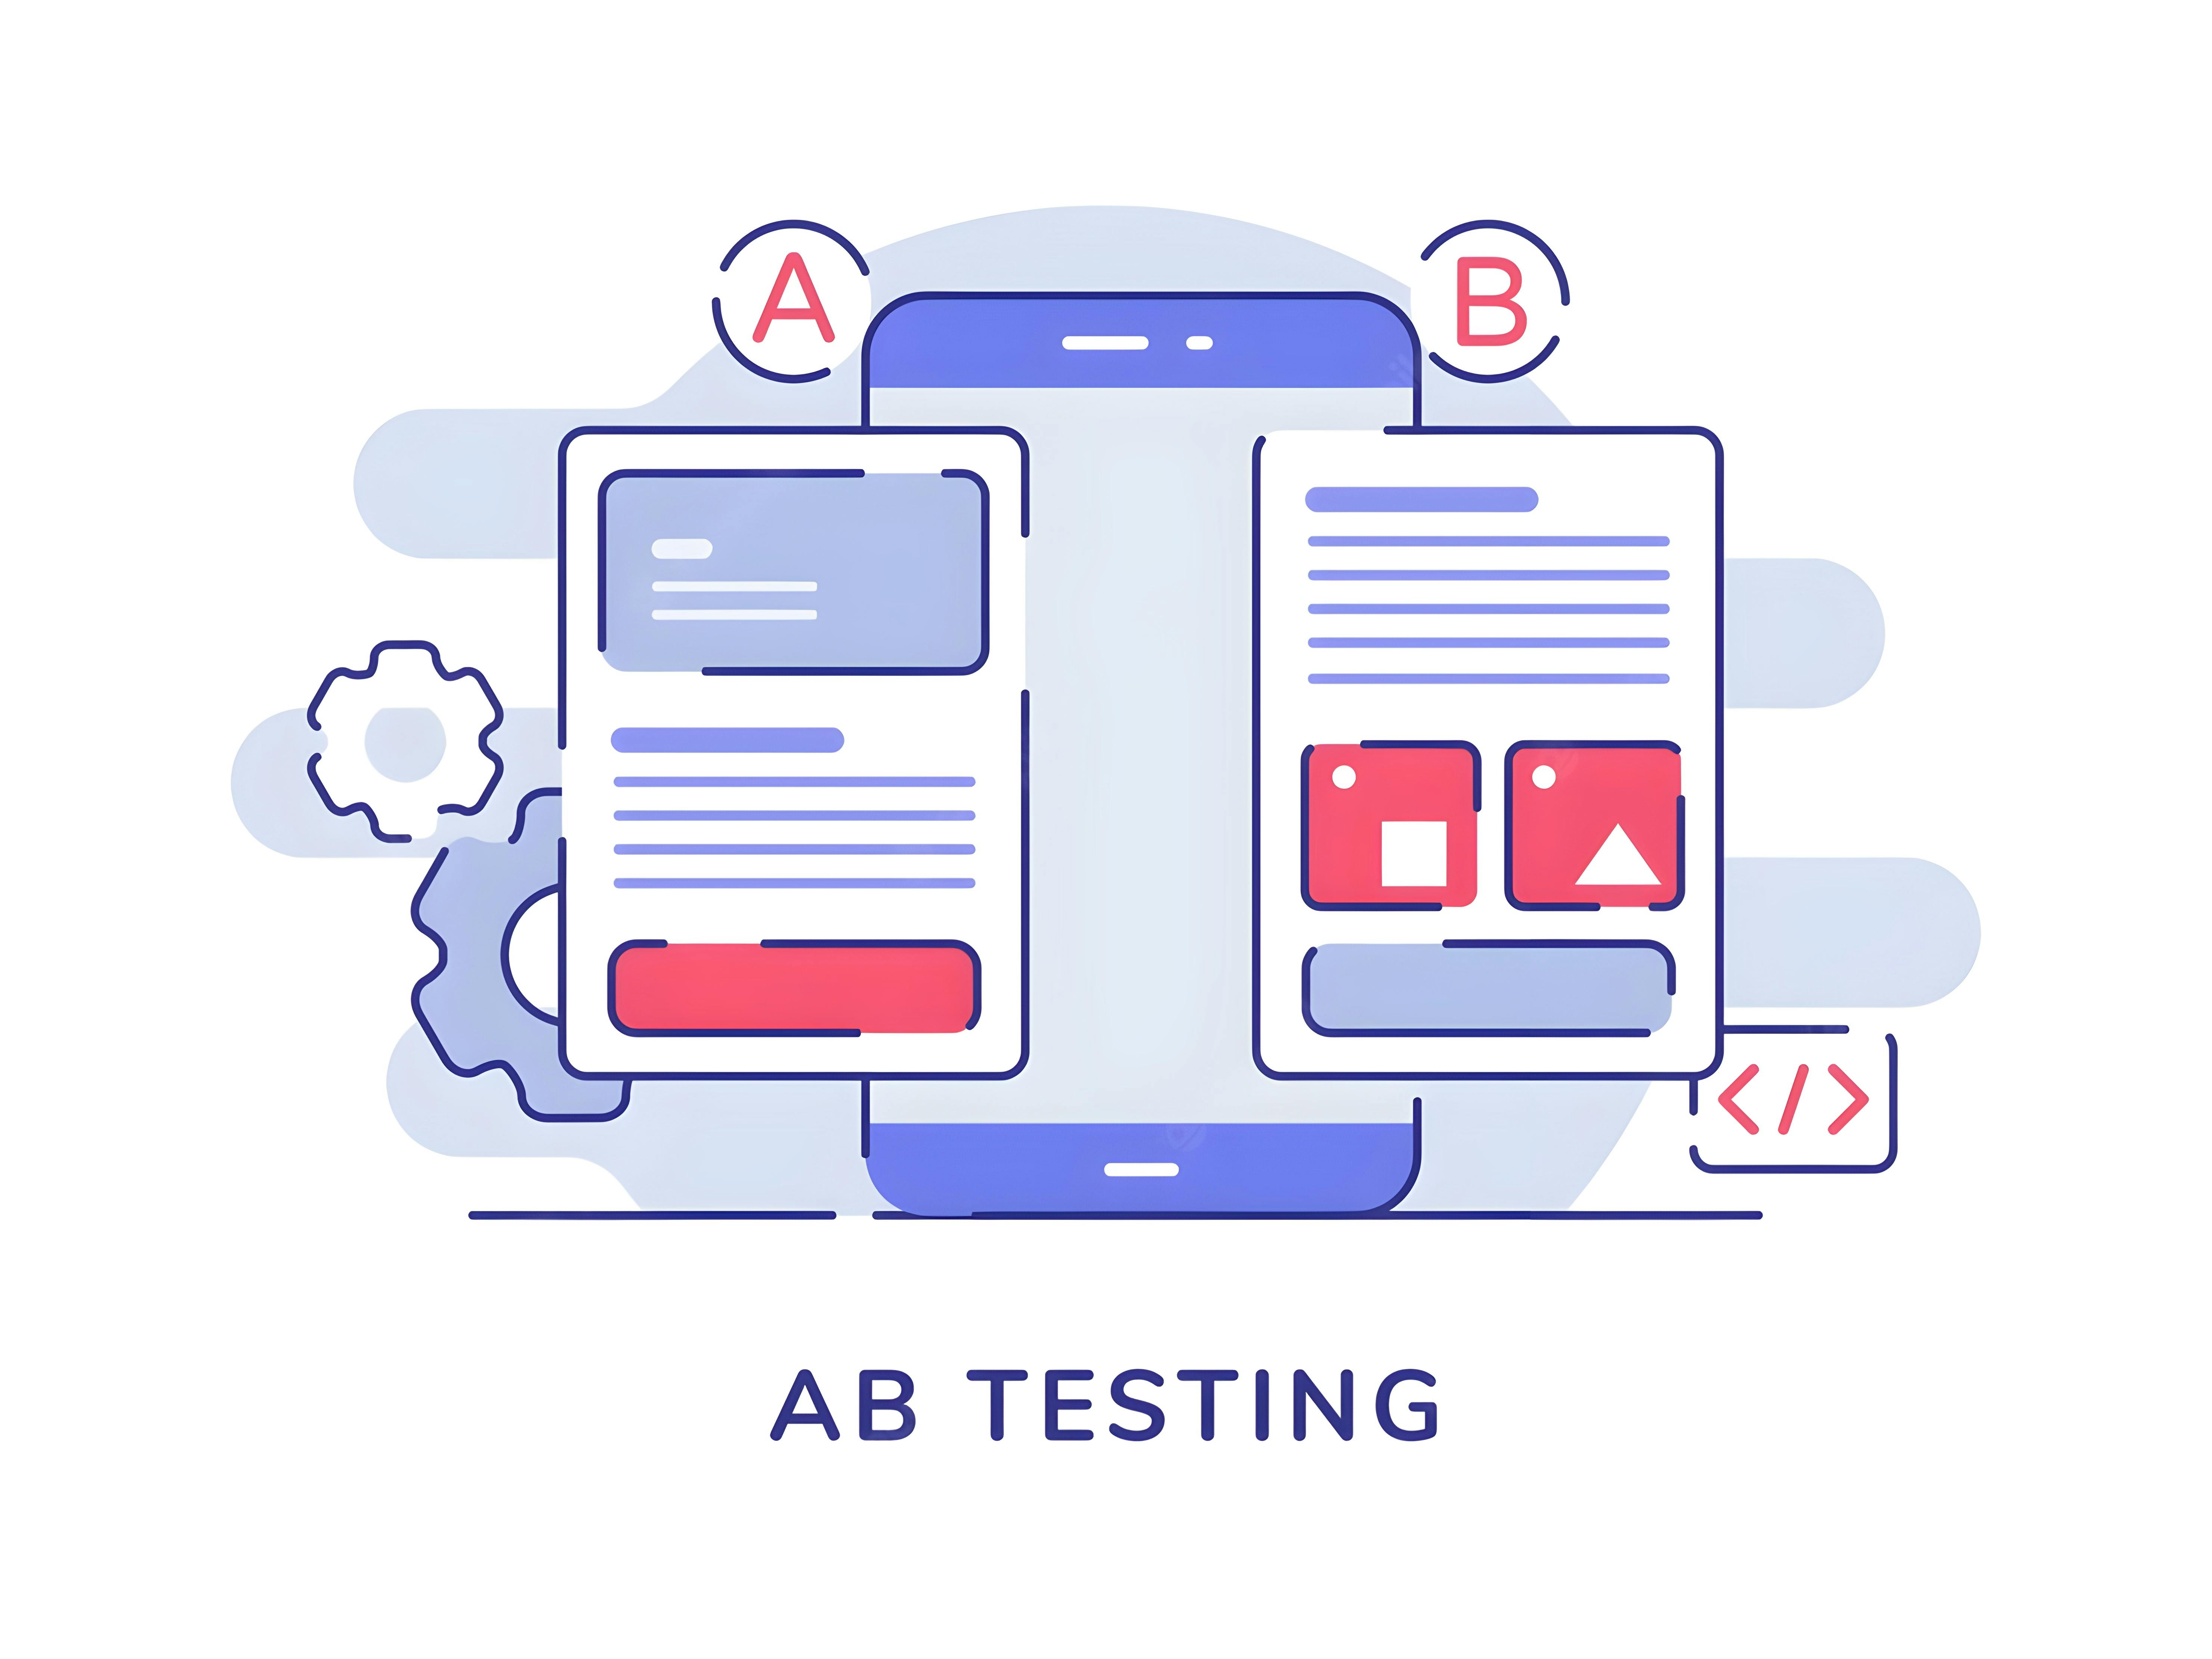 Illustrazione che spiega come l'A/B Test fornisca due versioni del contenuto servito in maniera randomica agli utenti